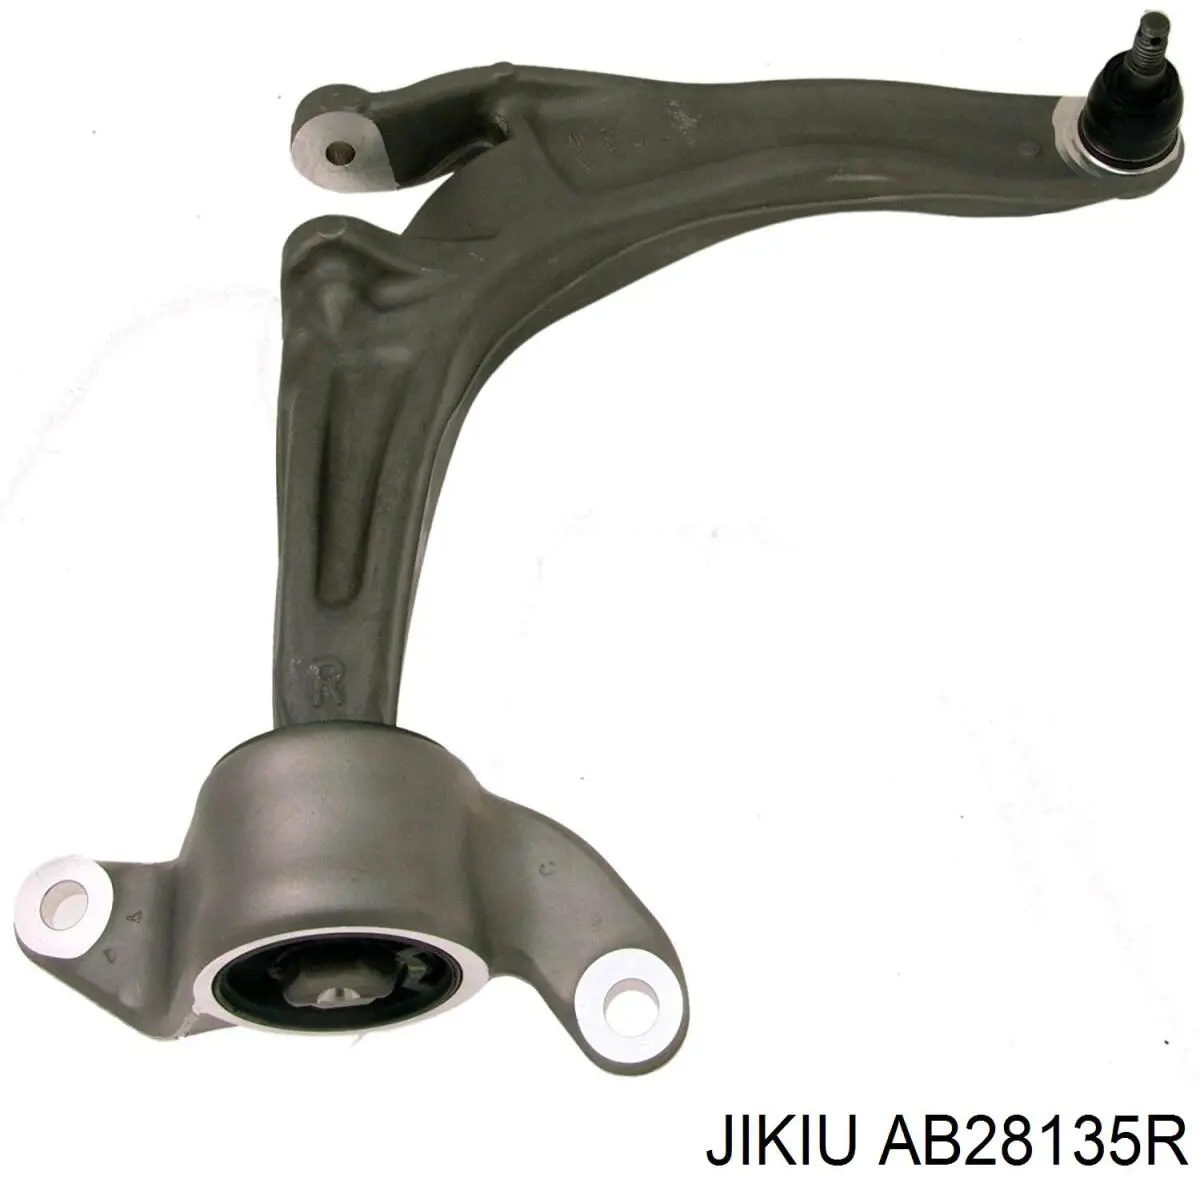 AB28135R Jikiu silentblock de suspensión delantero inferior